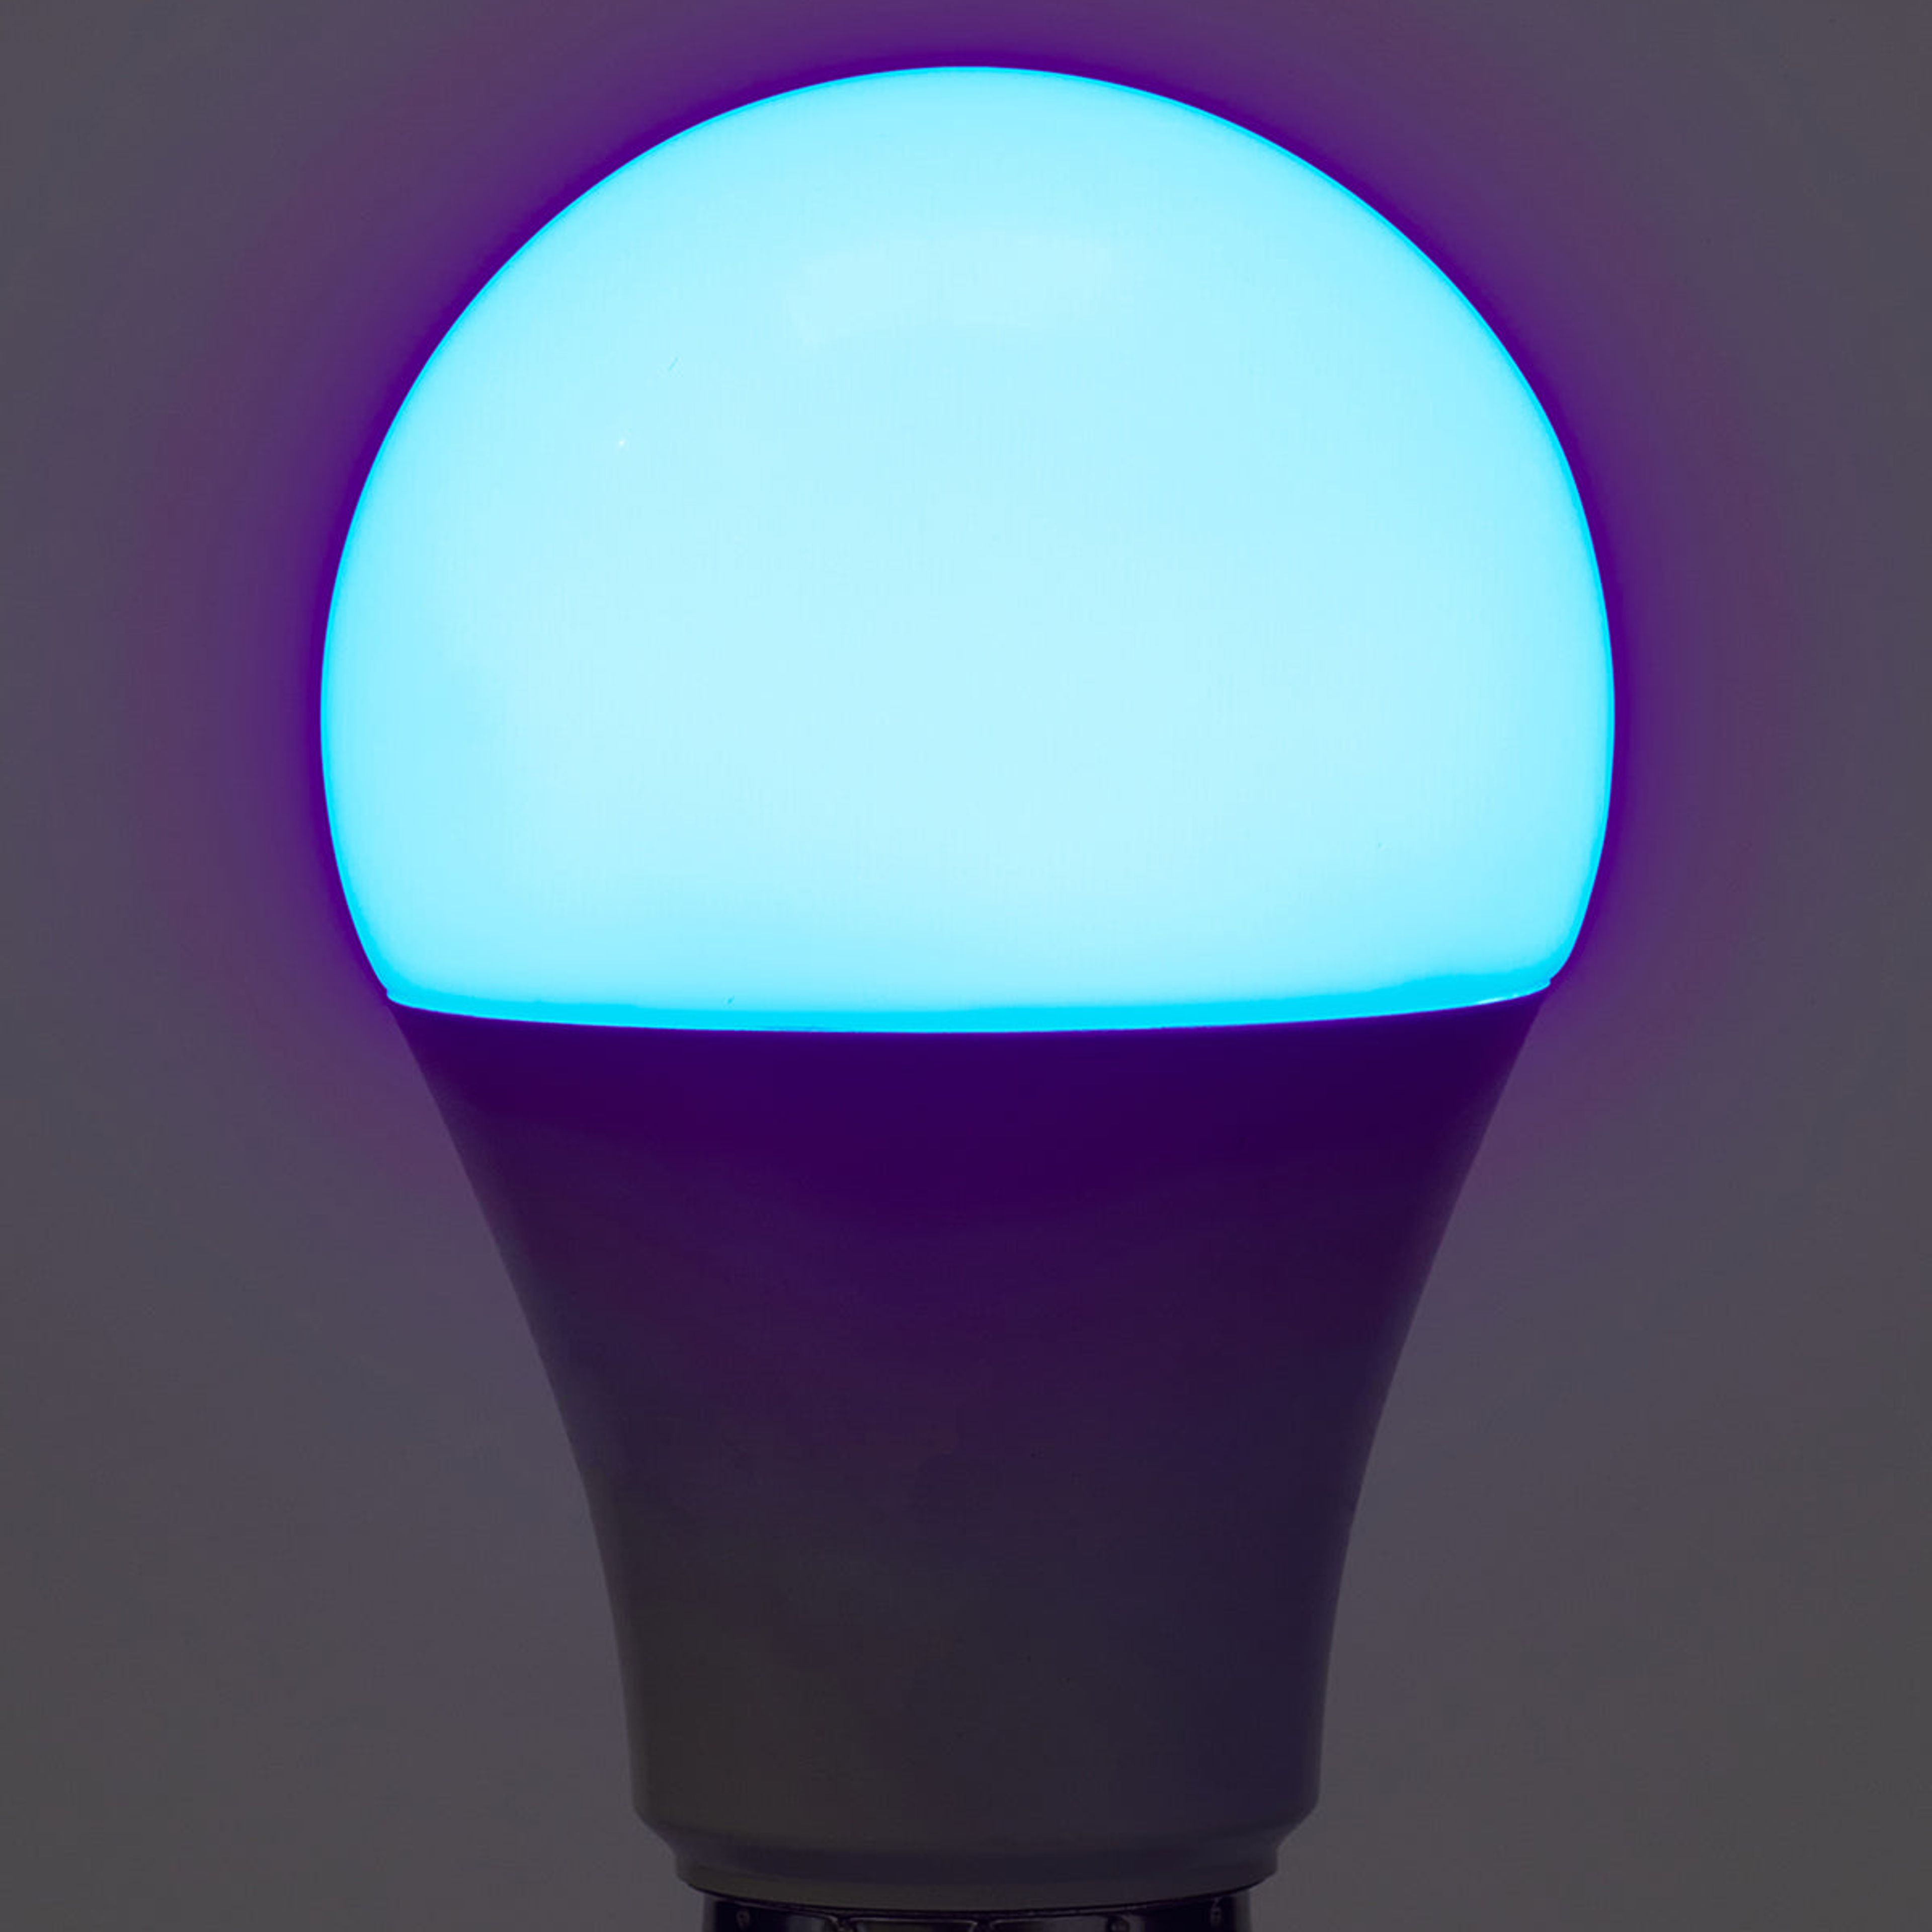 Smart Bulb A19